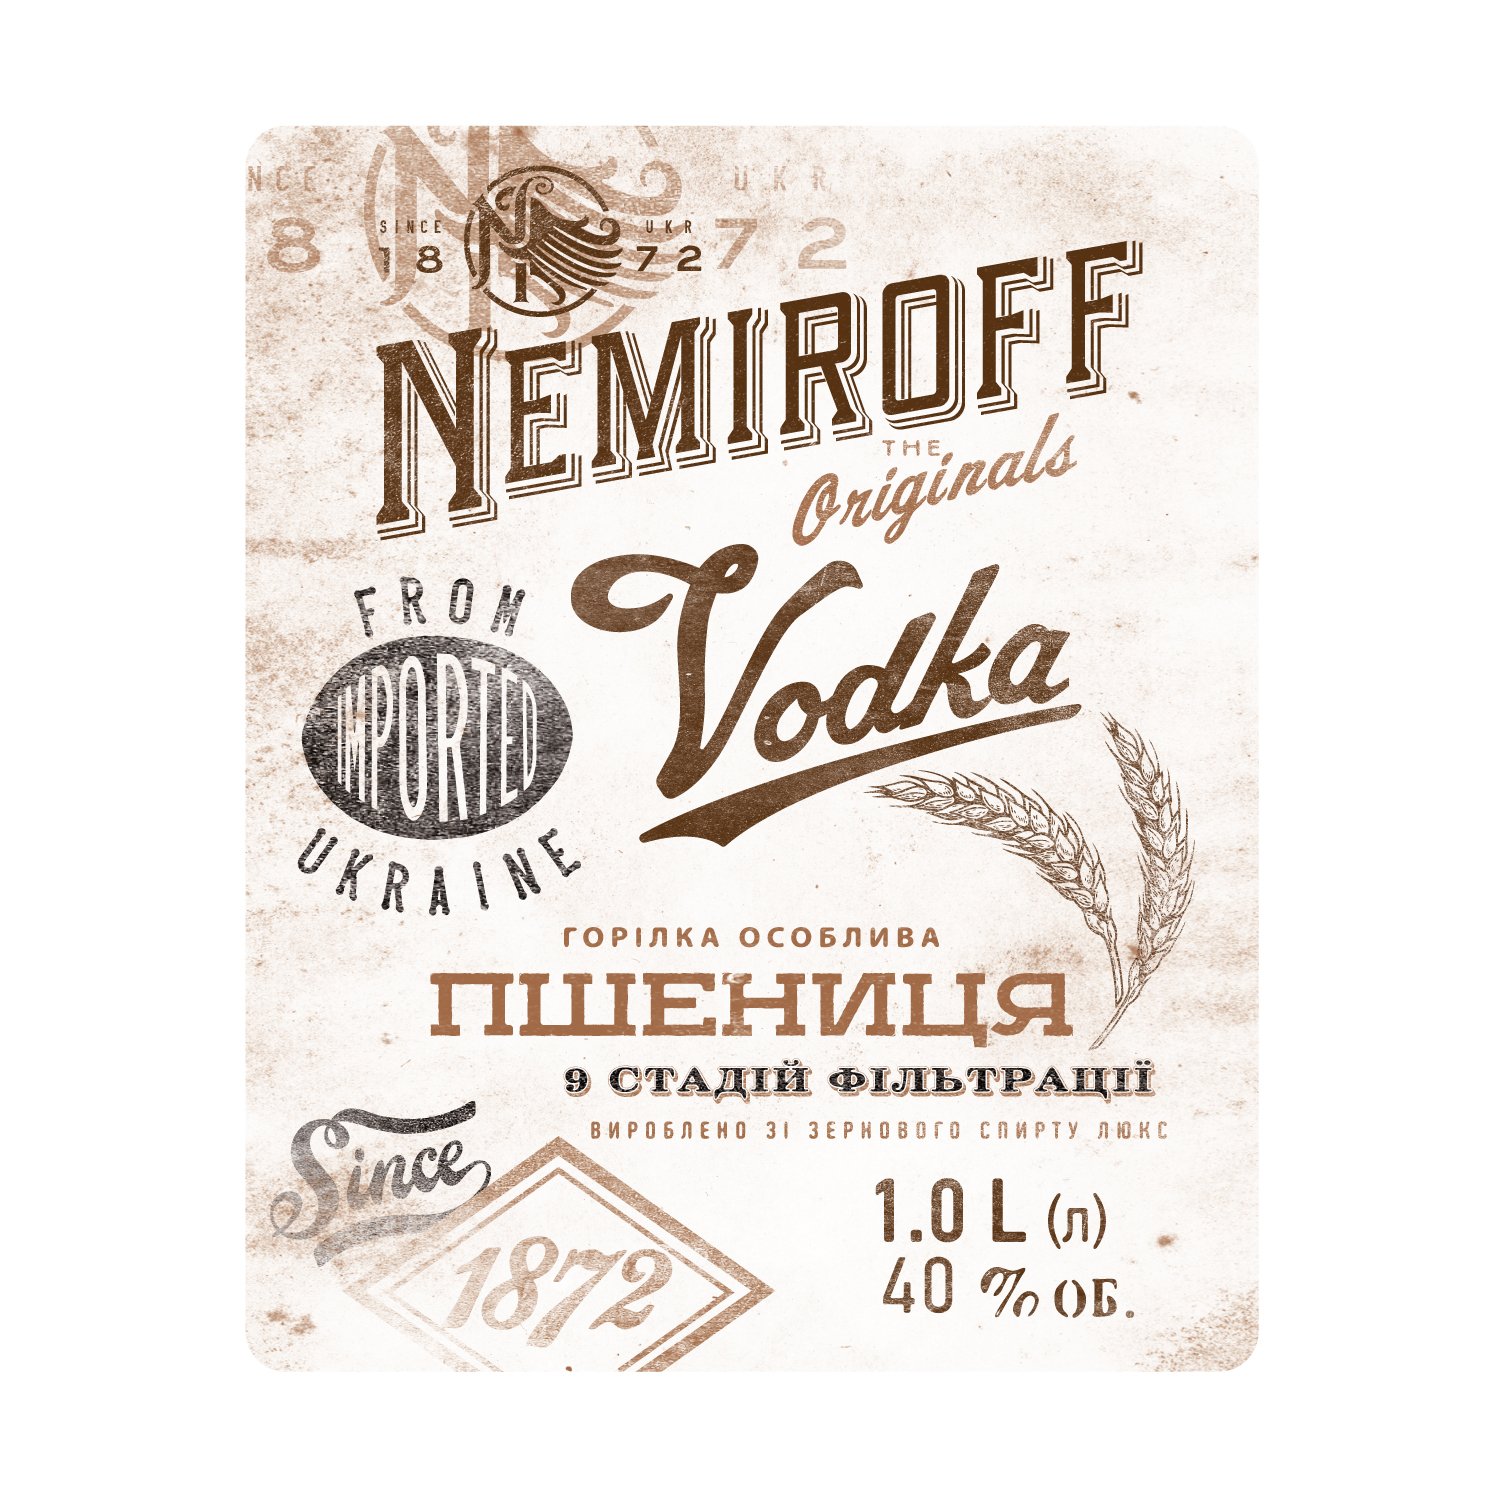 Водка особенная Nemiroff Originals Пшеница украинская отборная, 40%, 1 л (910055) - фото 4